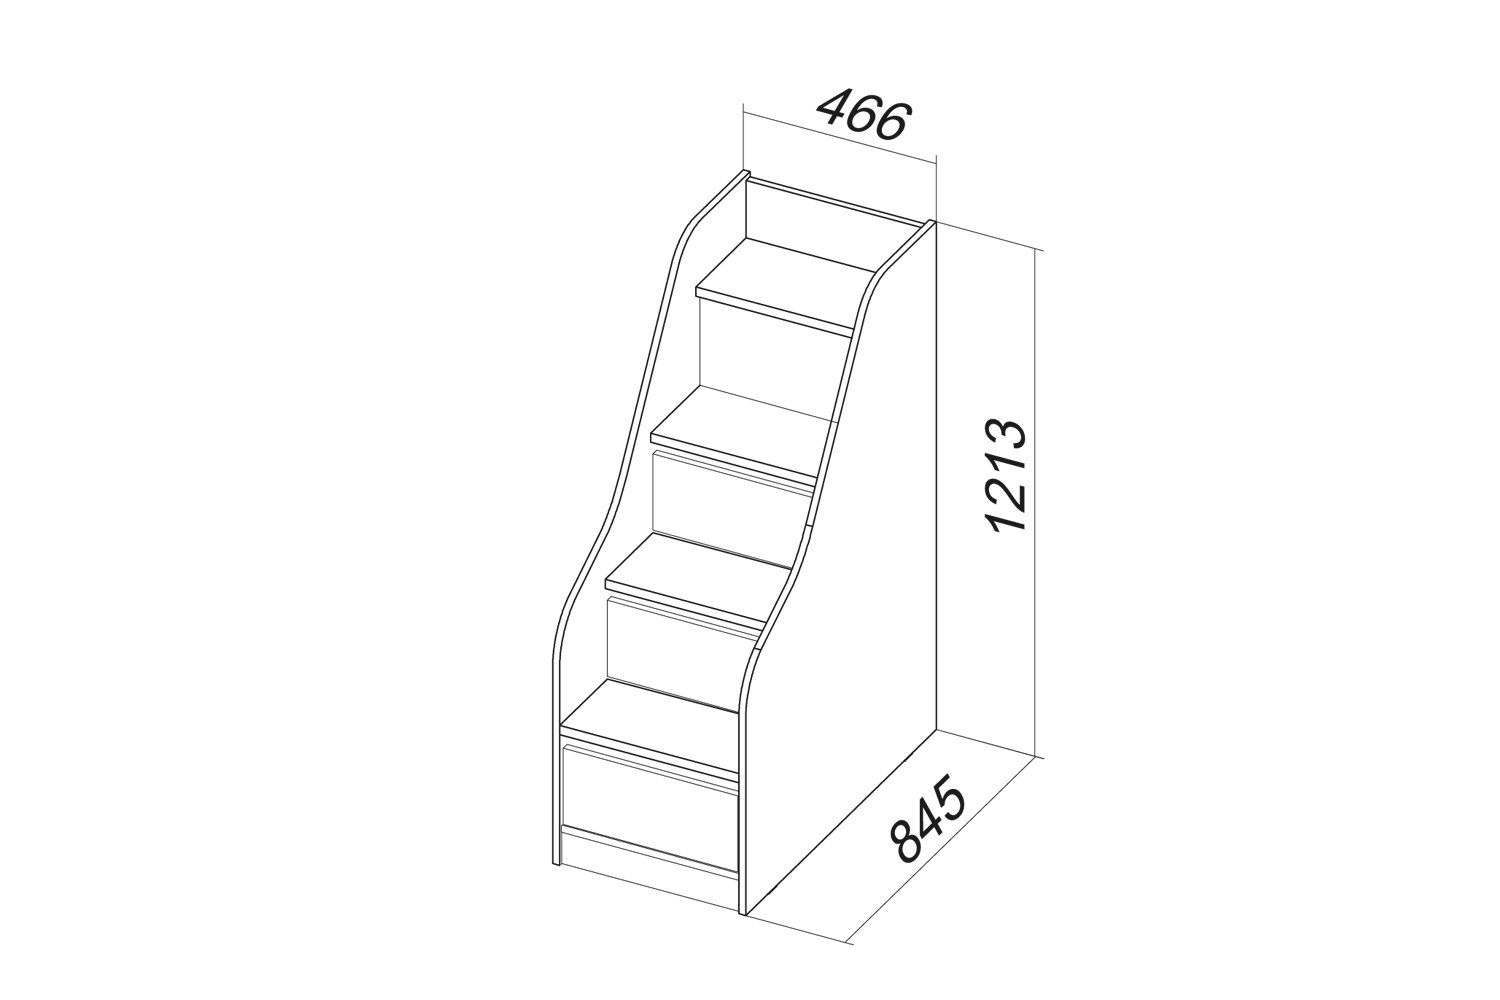 размер лестницы для кровати чердака